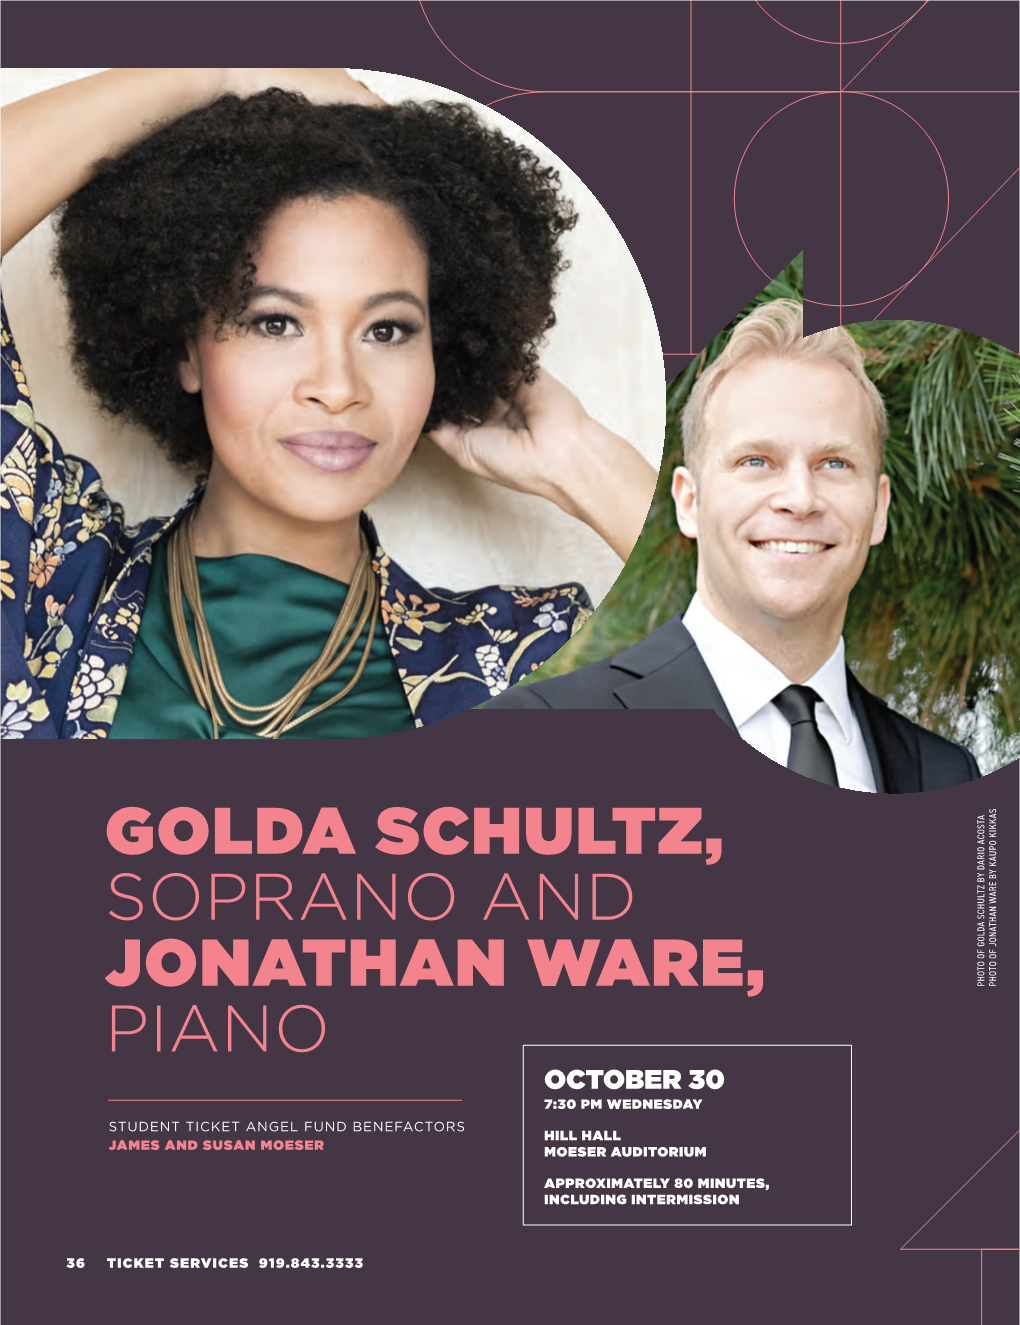 Golda Schultz, Soprano and Jonathan Ware, Piano